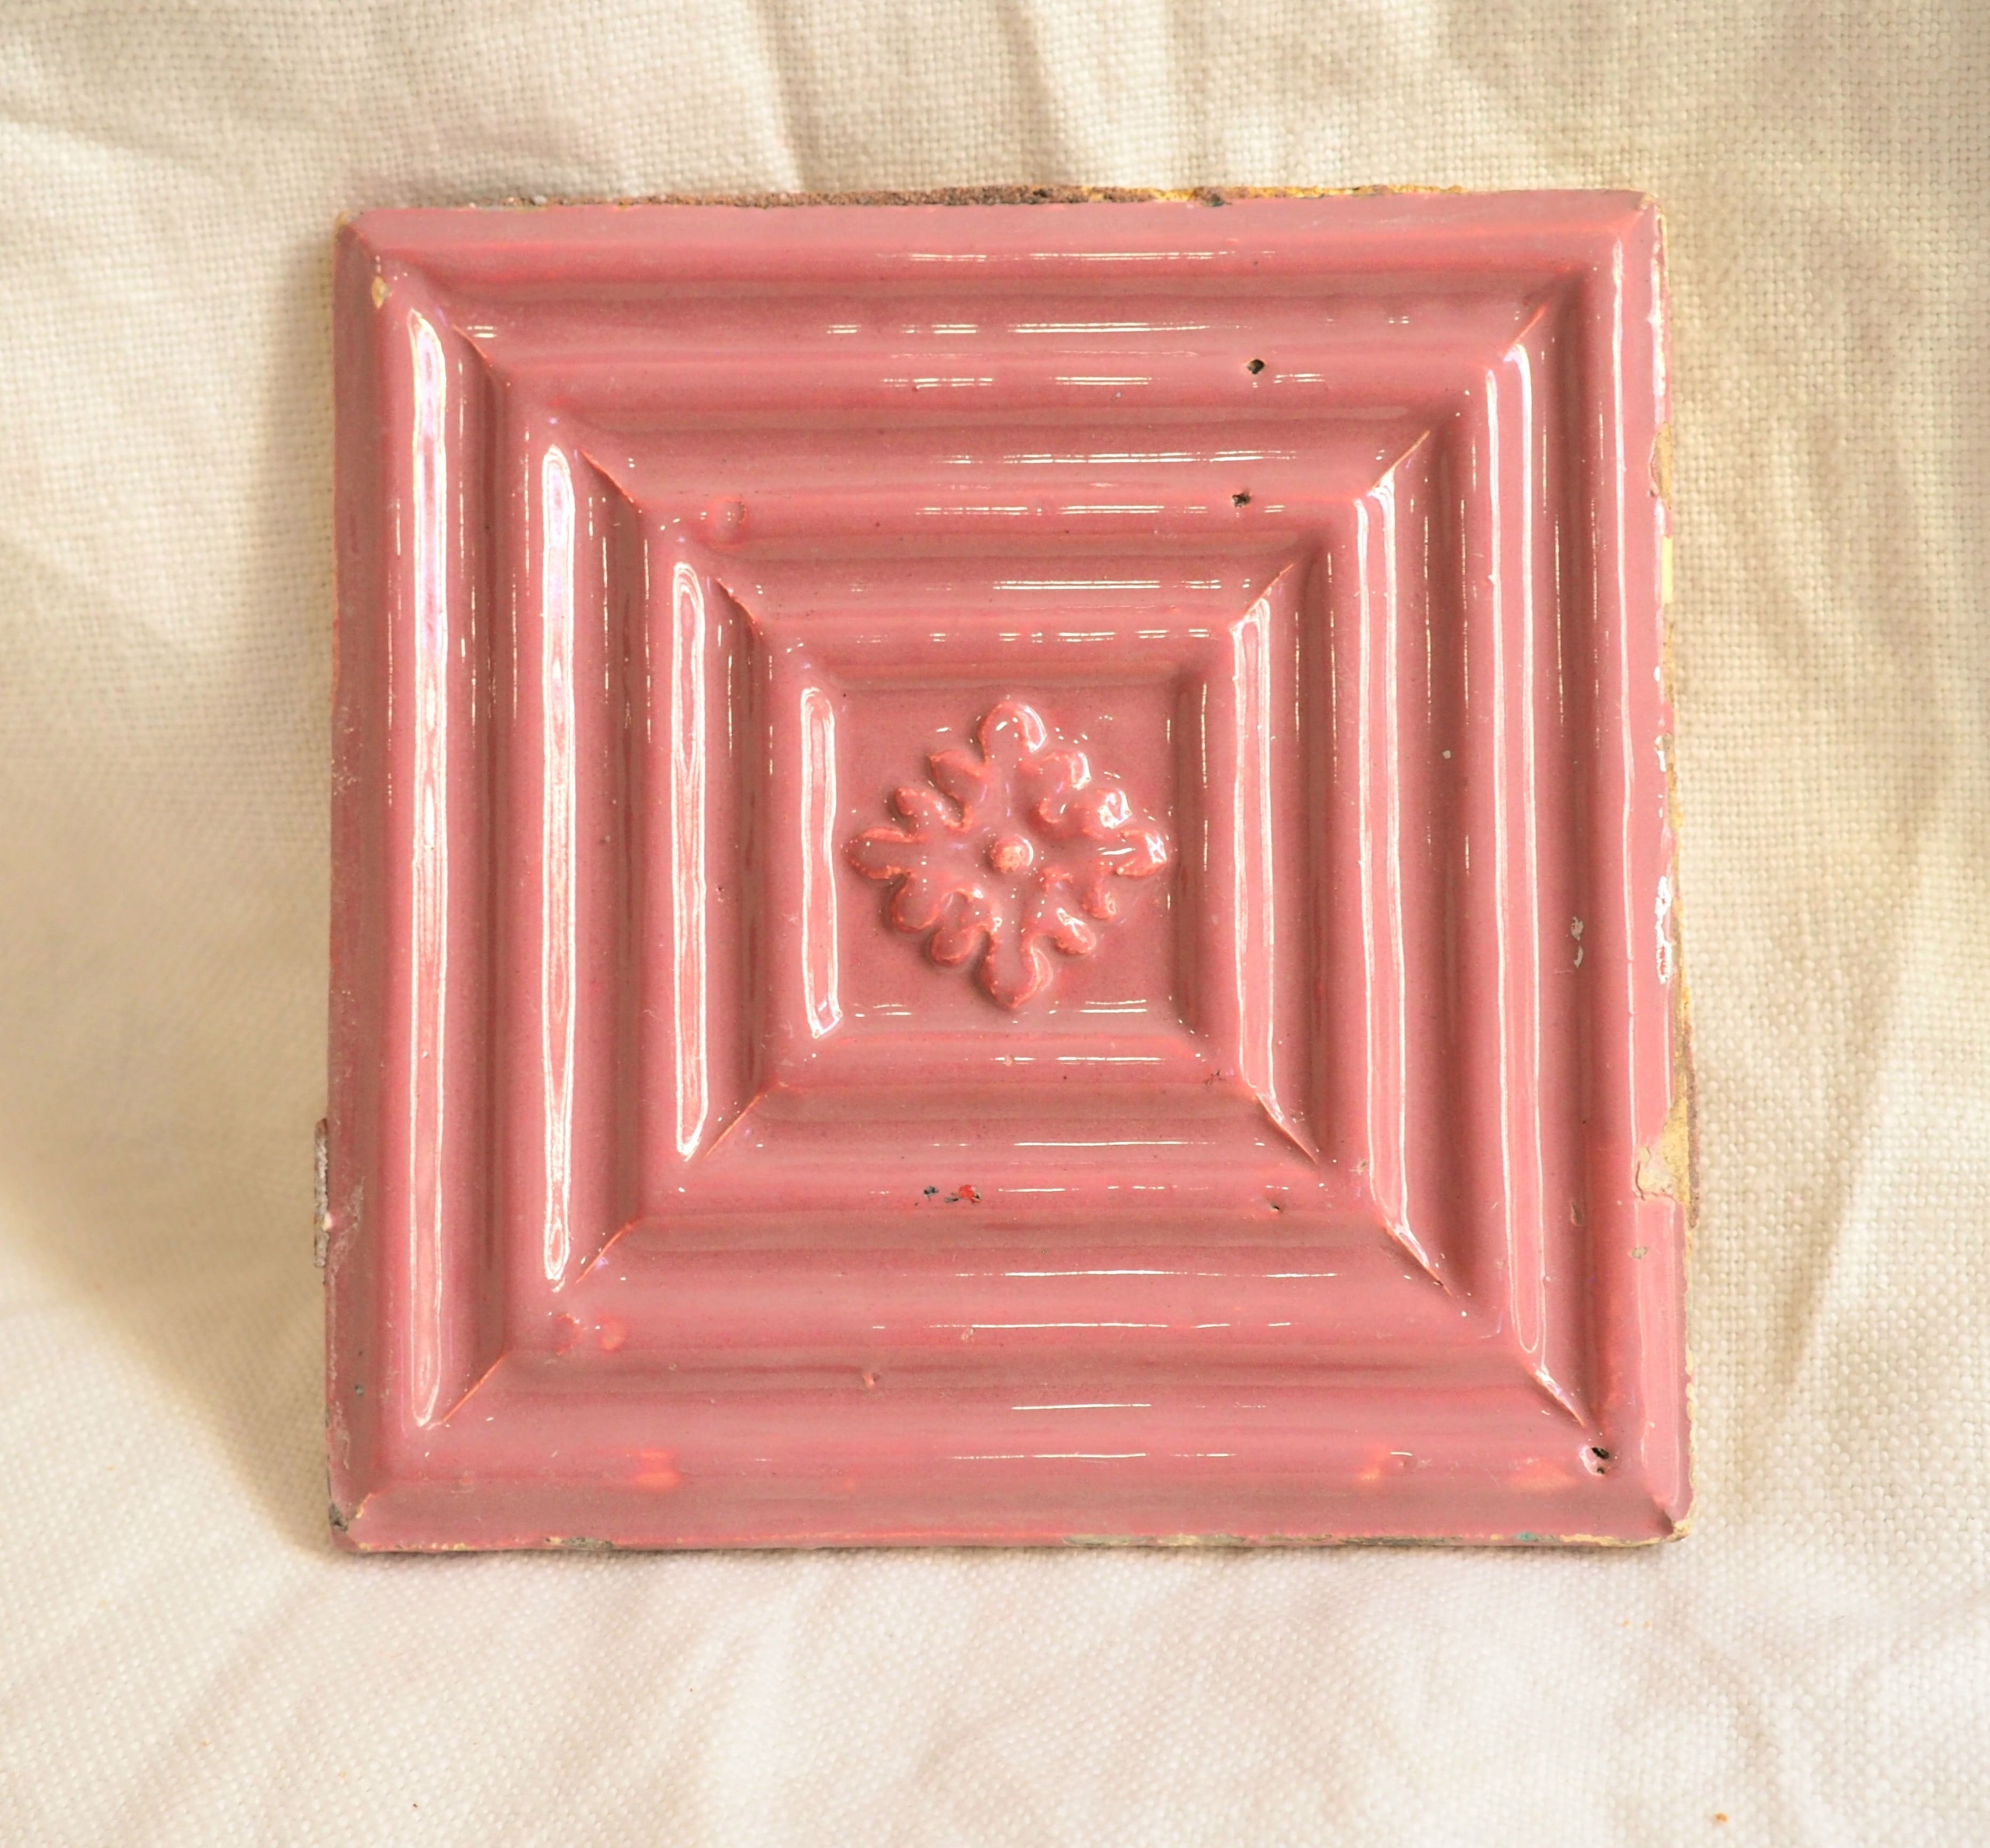 carreau de faïence du Portugal de couleur rose à motifs en relief ton sur ton